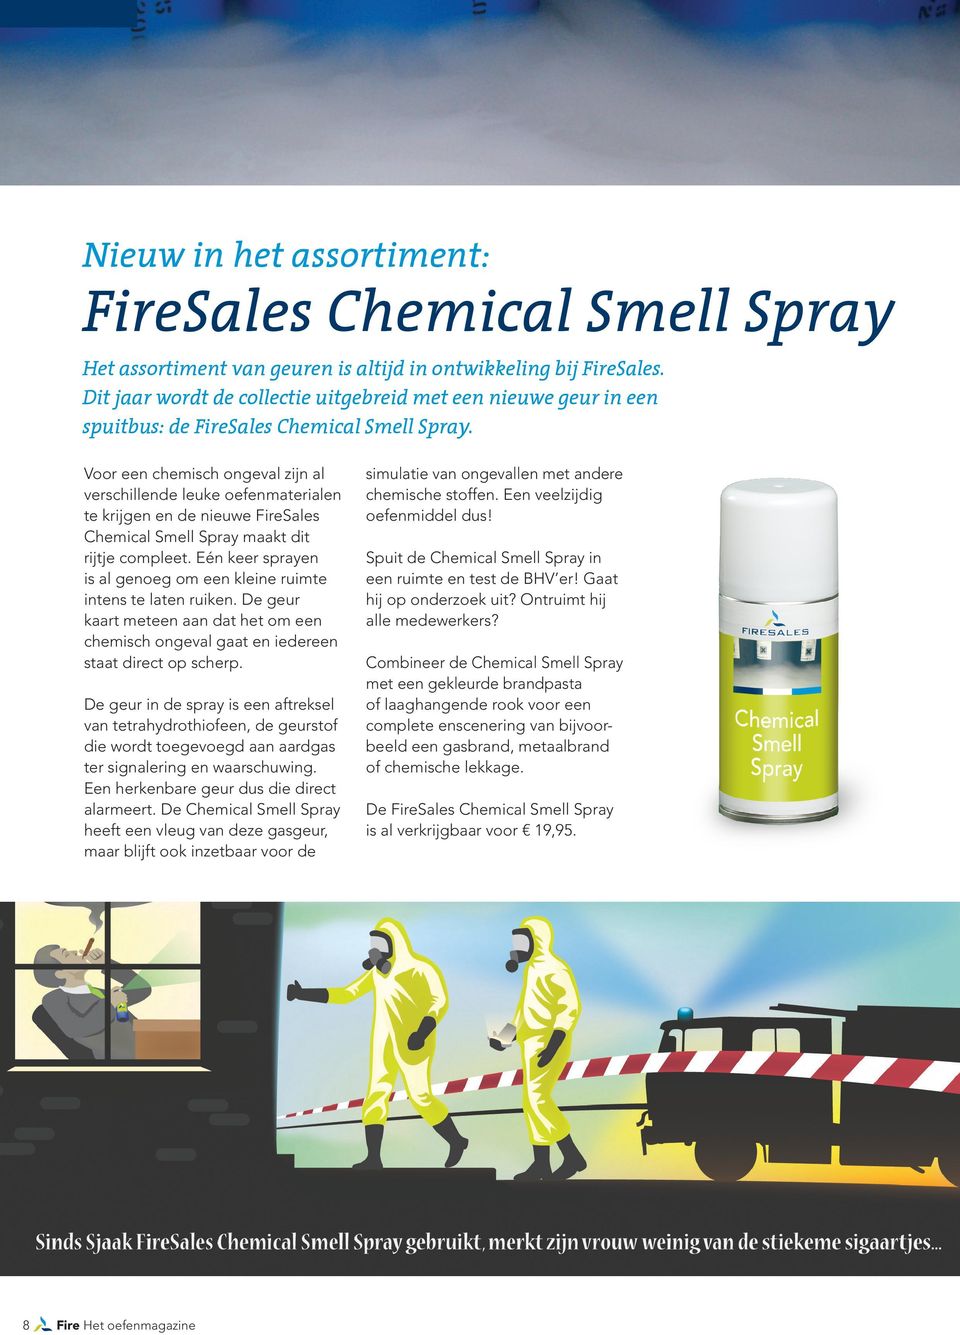 Voor een chemisch ongeval zijn al verschillende leuke oefenmaterialen te krijgen en de nieuwe FireSales Chemical Smell Spray maakt dit rijtje compleet.